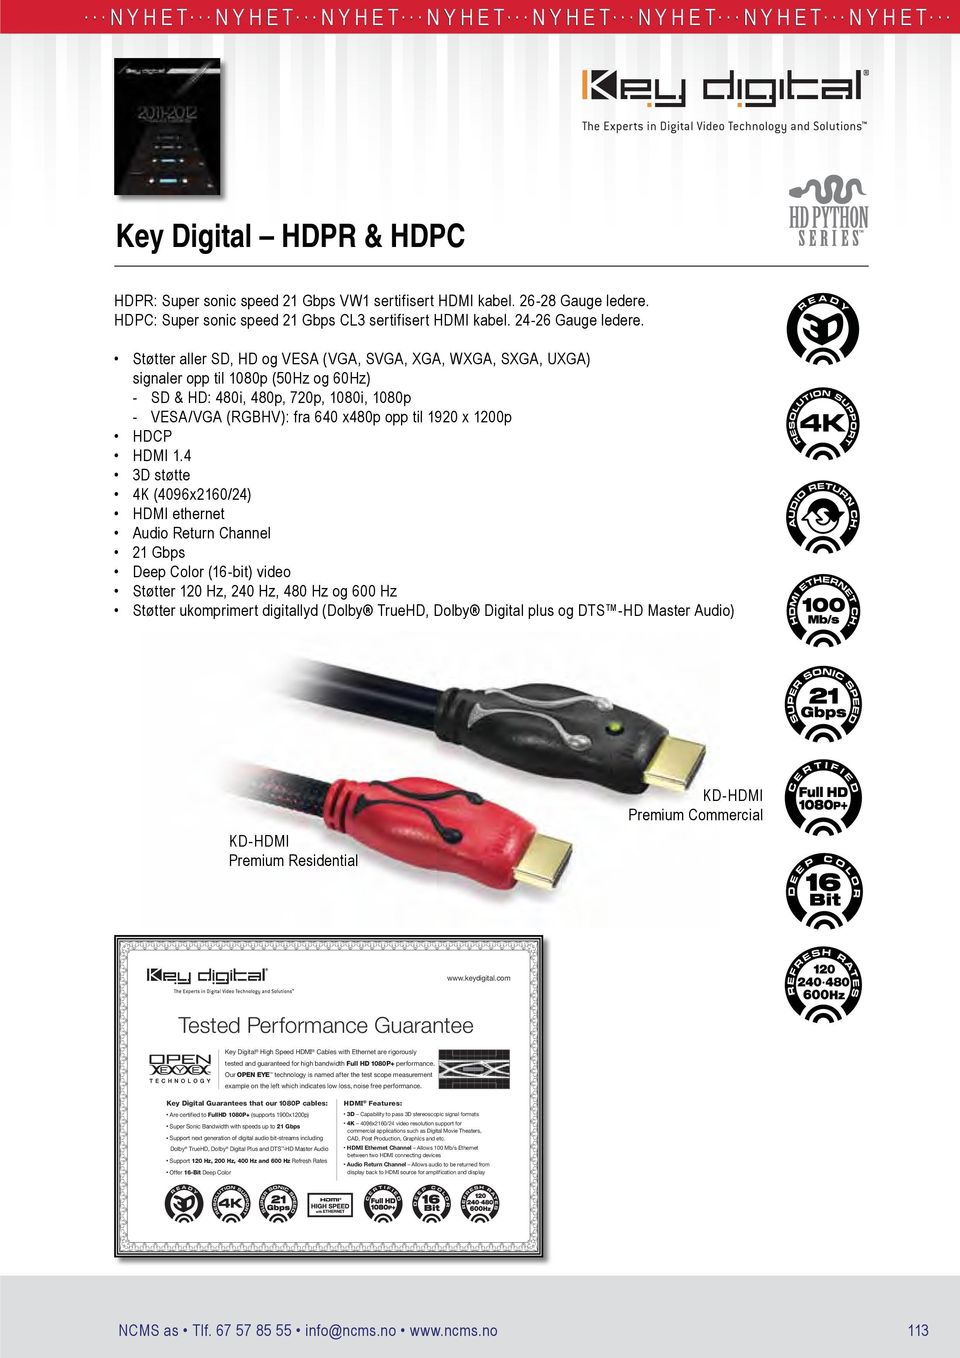 HDCP 1.